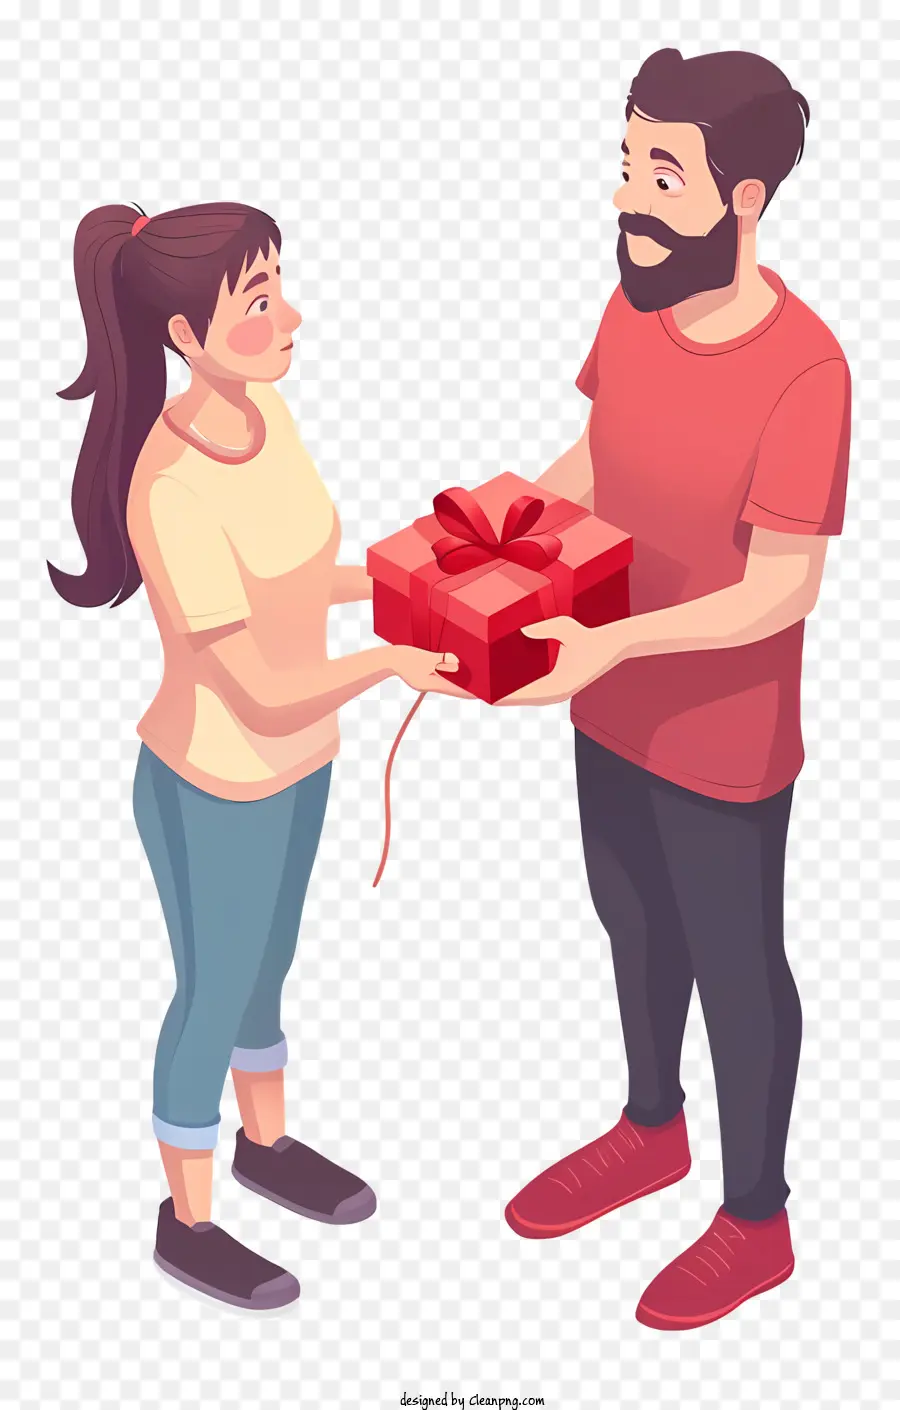 Quà tặng Valentine cho bạn trai Từ khóa có liên quan: Quà tặng bất ngờ cho Hộp màu đỏ - Người đàn ông cho phụ nữ hộp đỏ; 
Cả hai hạnh phúc. 
Chất lượng cao, hình ảnh được thực hiện tốt